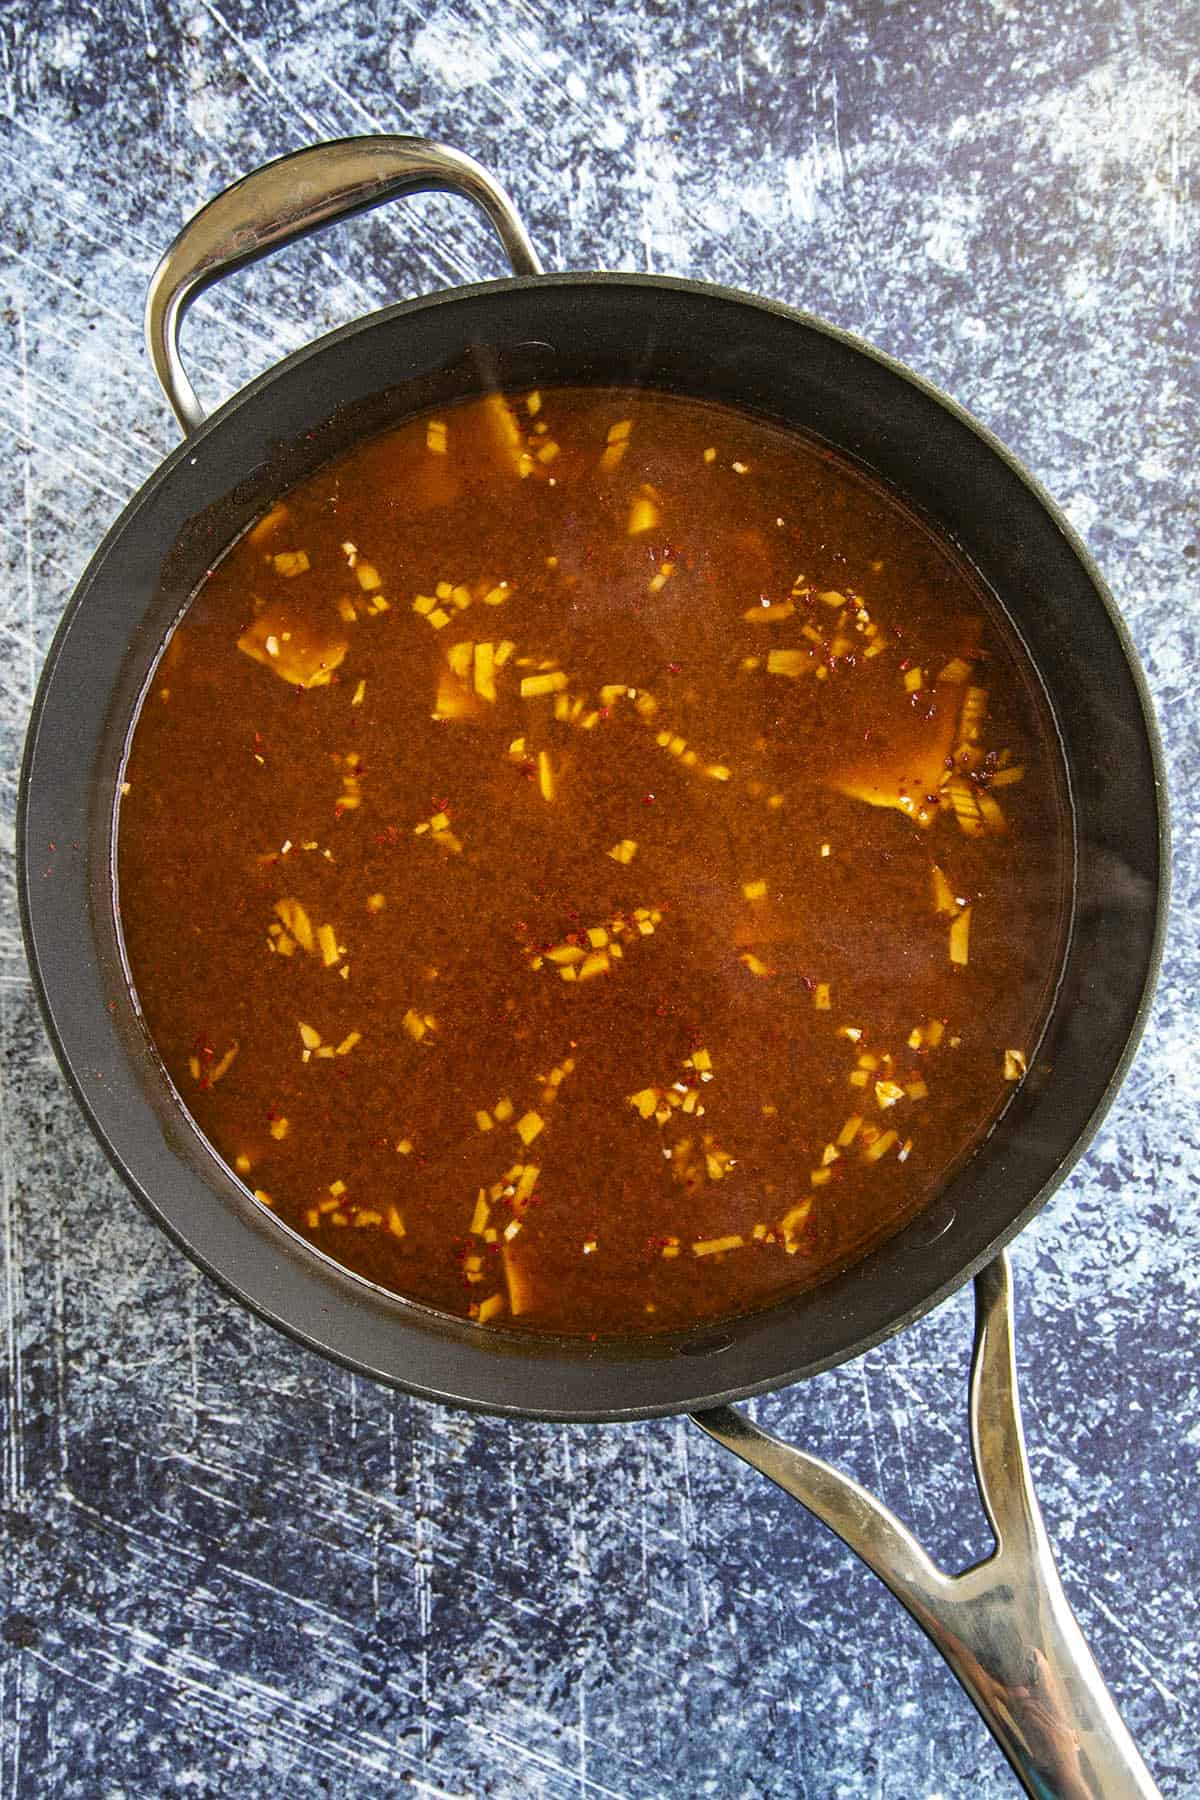 Sauce for making Tteokbokki in a pan